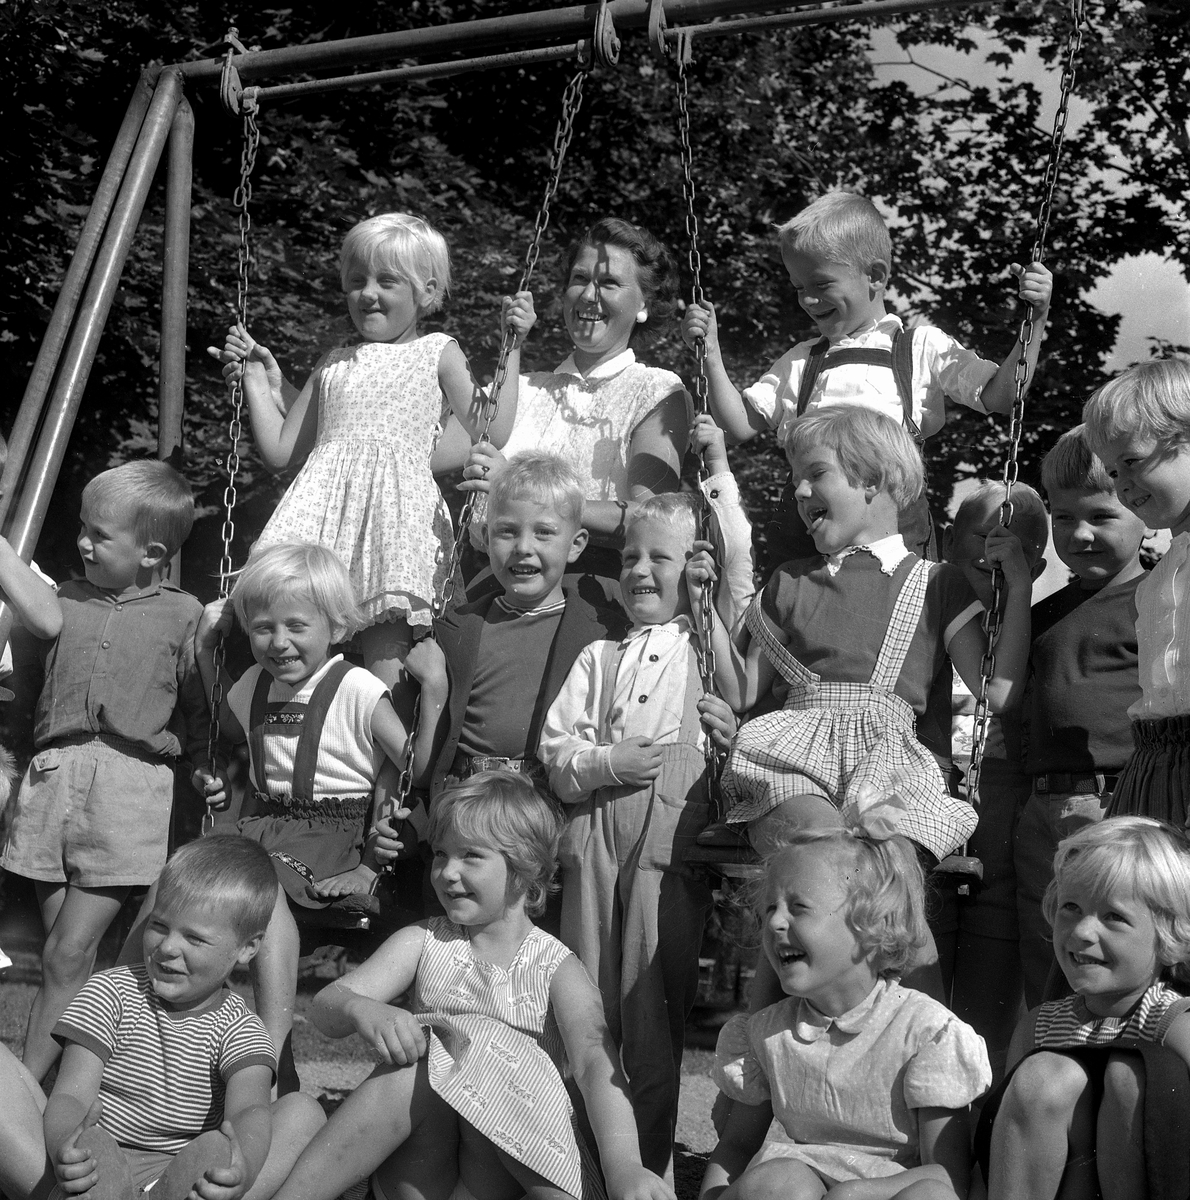 Barnträdgårdarna startar.
2 september 1958.